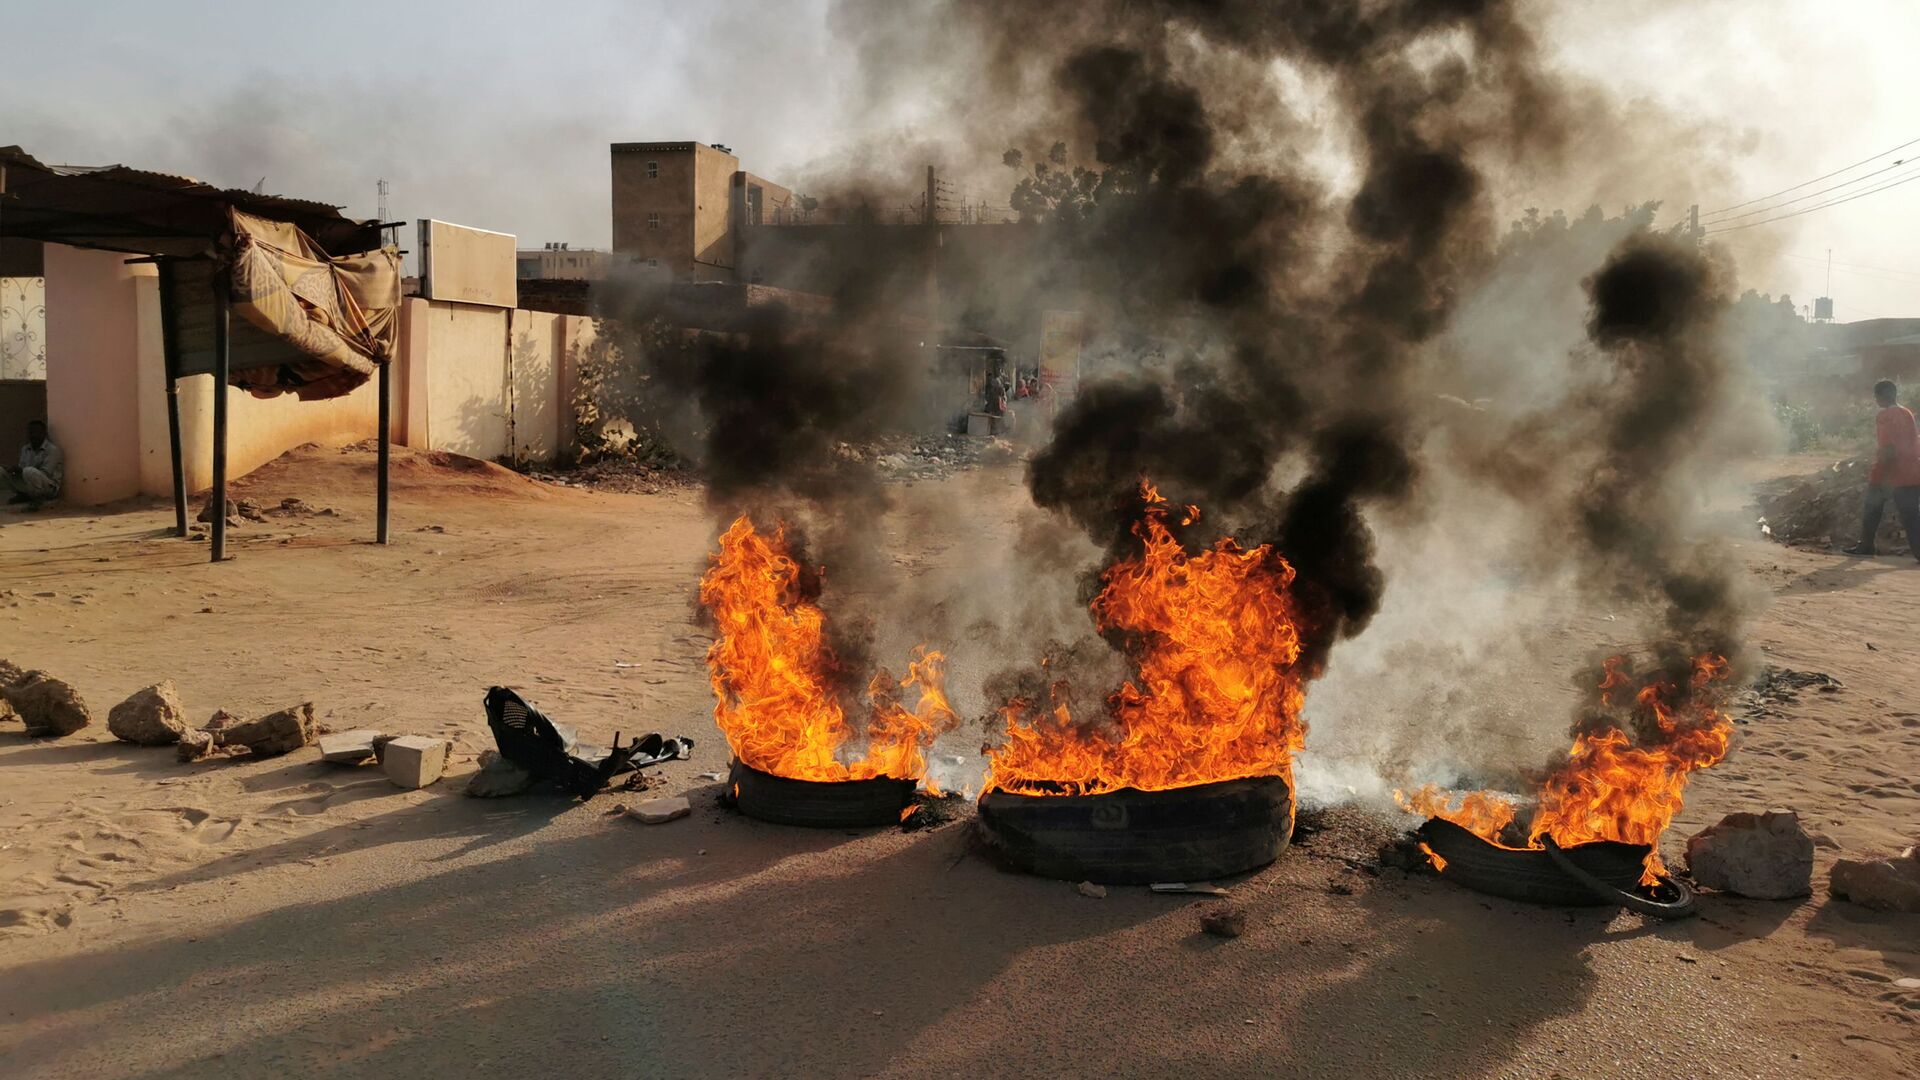 مظاهرات في شوارع مدينة الخرطوم، السودان 25 أكتوبر 2021 - سبوتنيك عربي, 1920, 29.10.2021